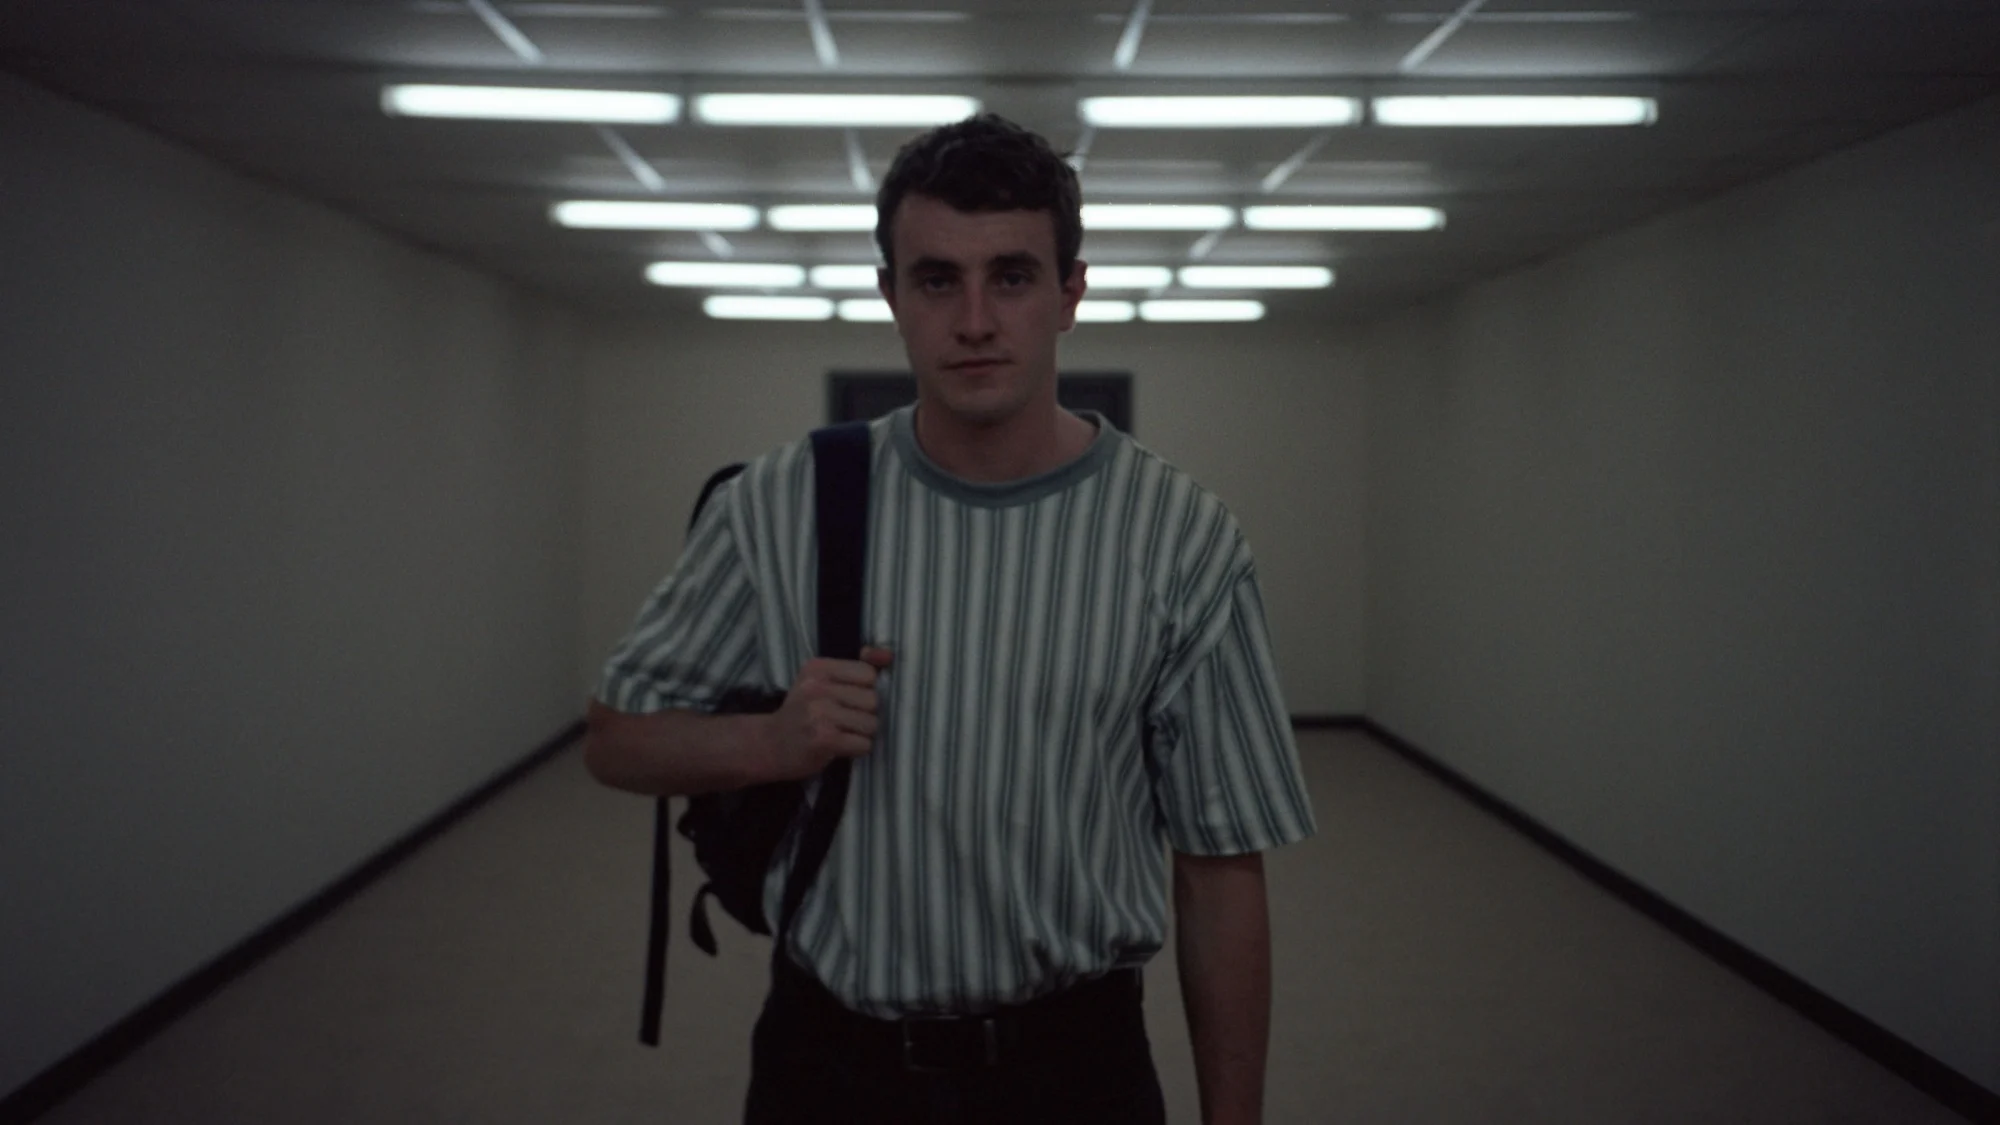 Cena do filme Aftersun, mostra o pai sozinho em um corredor vazio, segurando uma alça da mochila no ombro e olhando para a câmera.